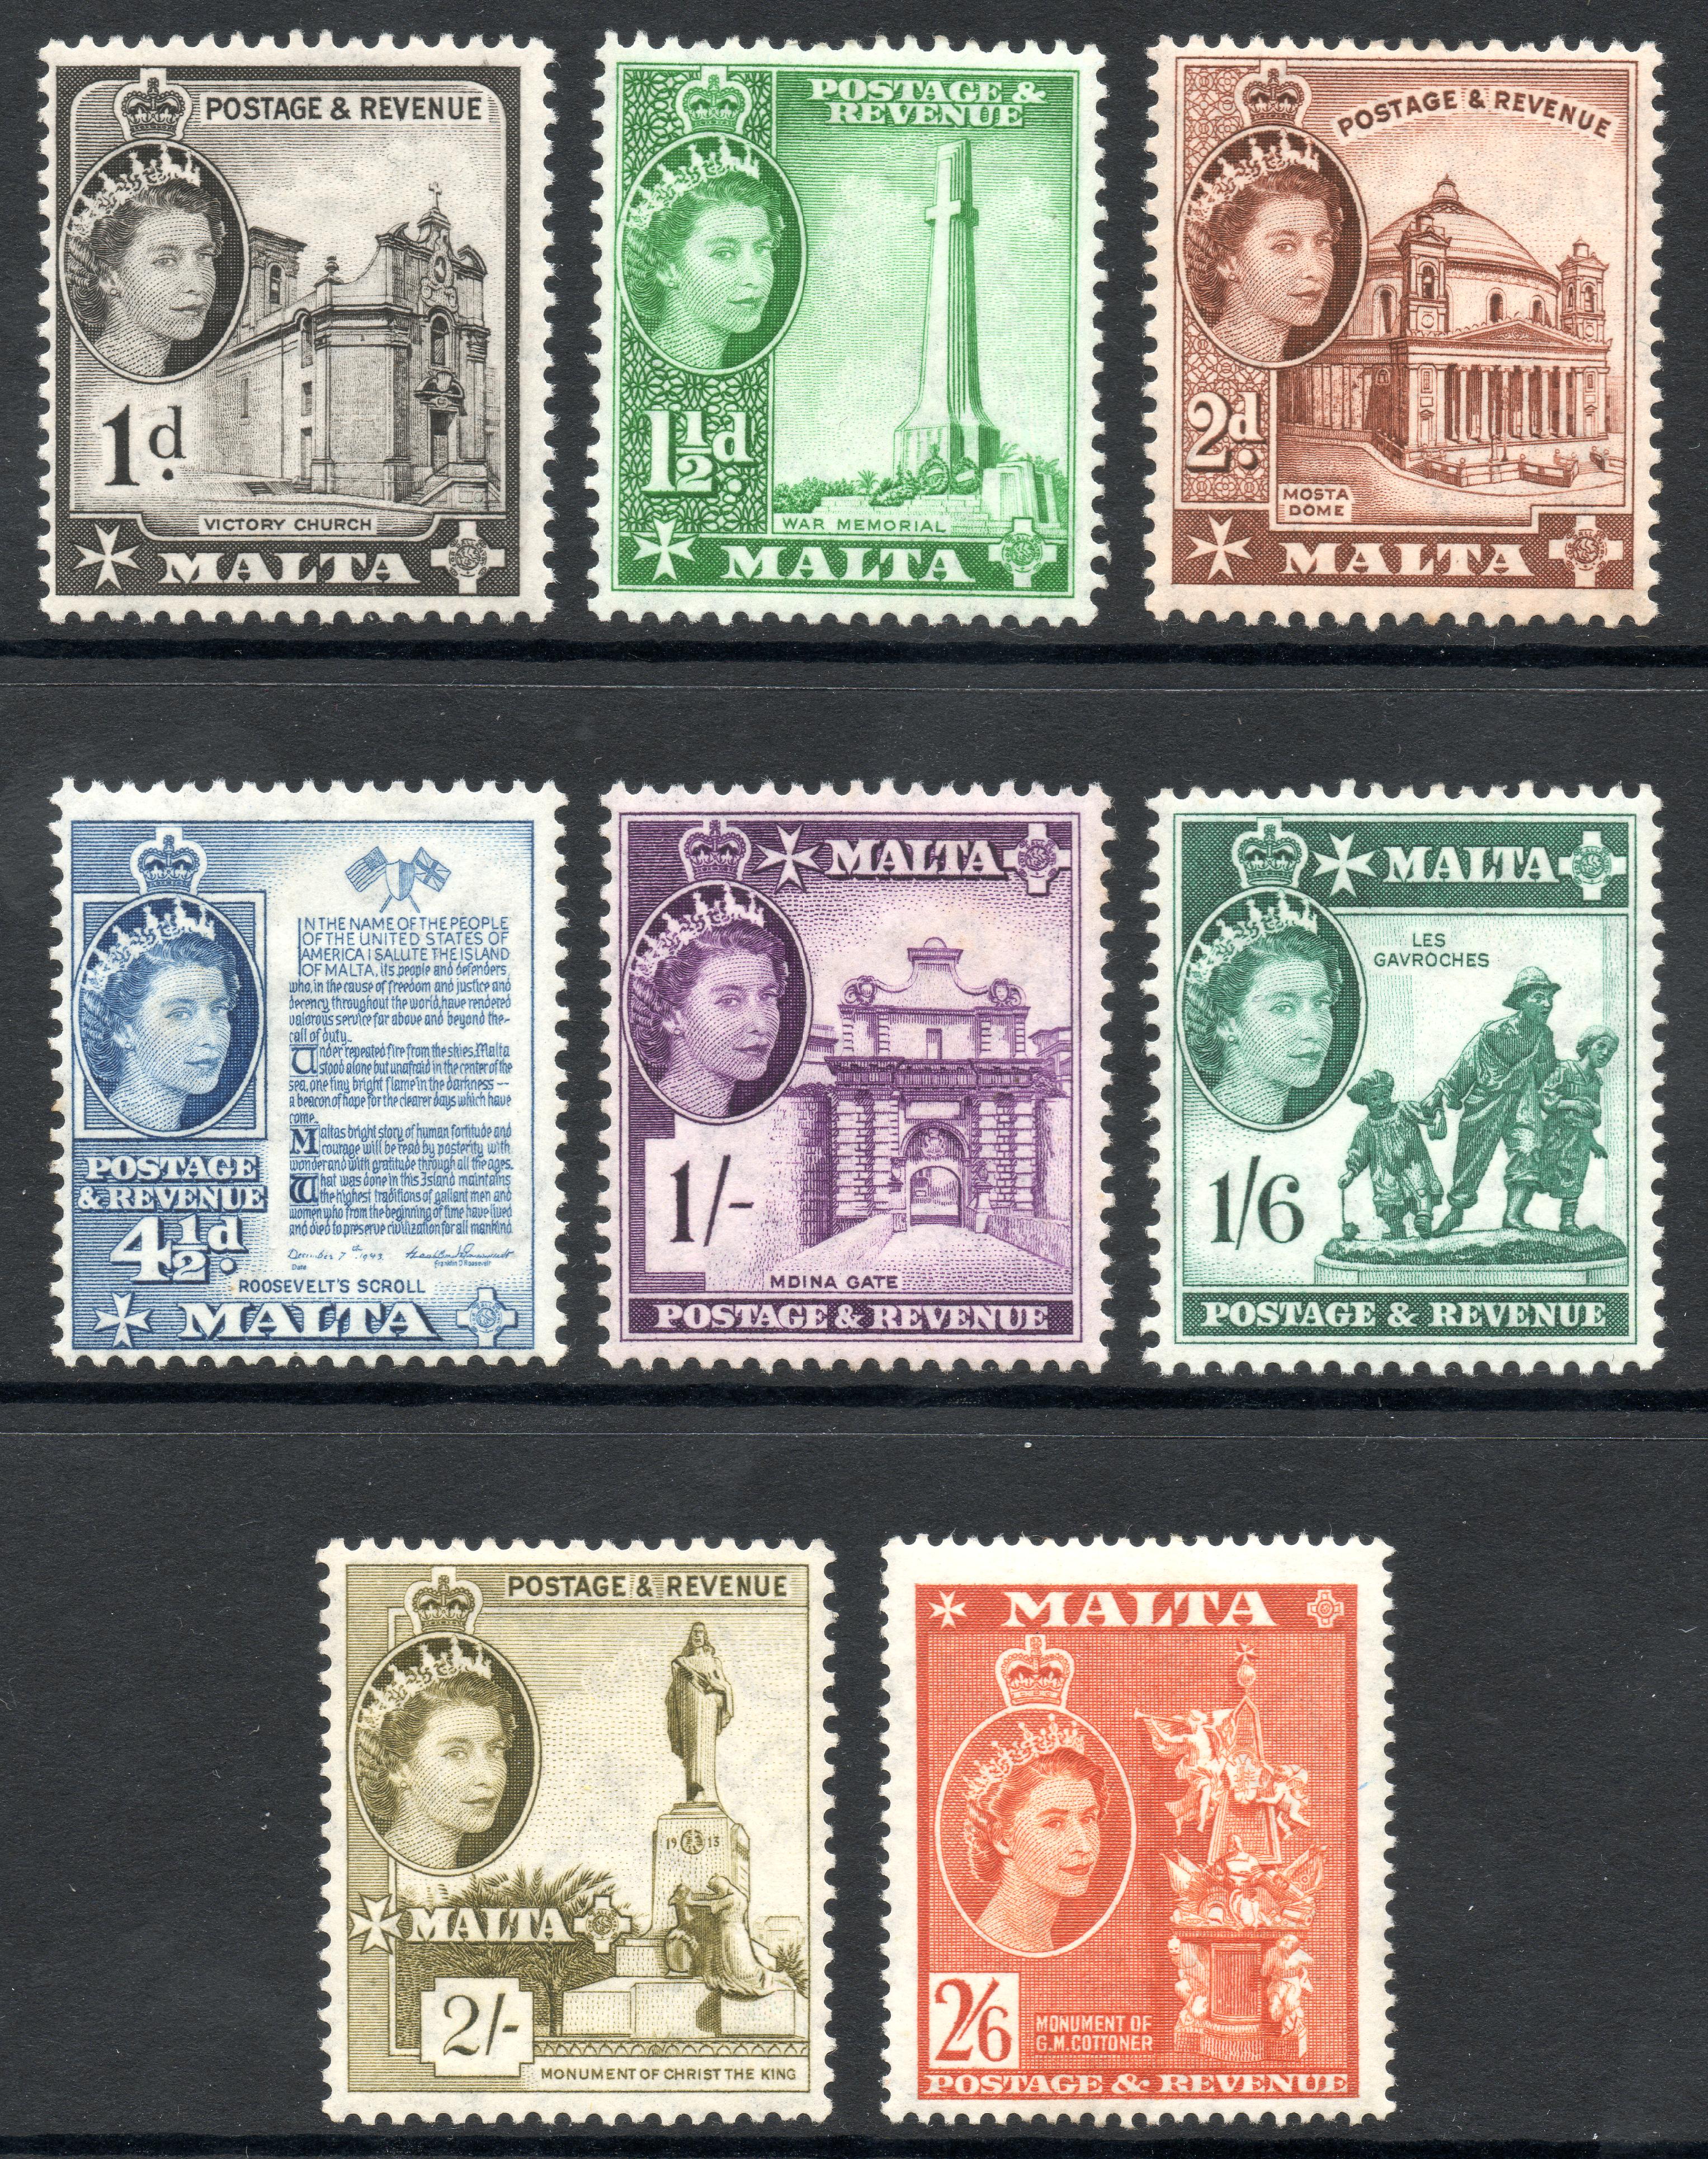 Malta 1956 definitives